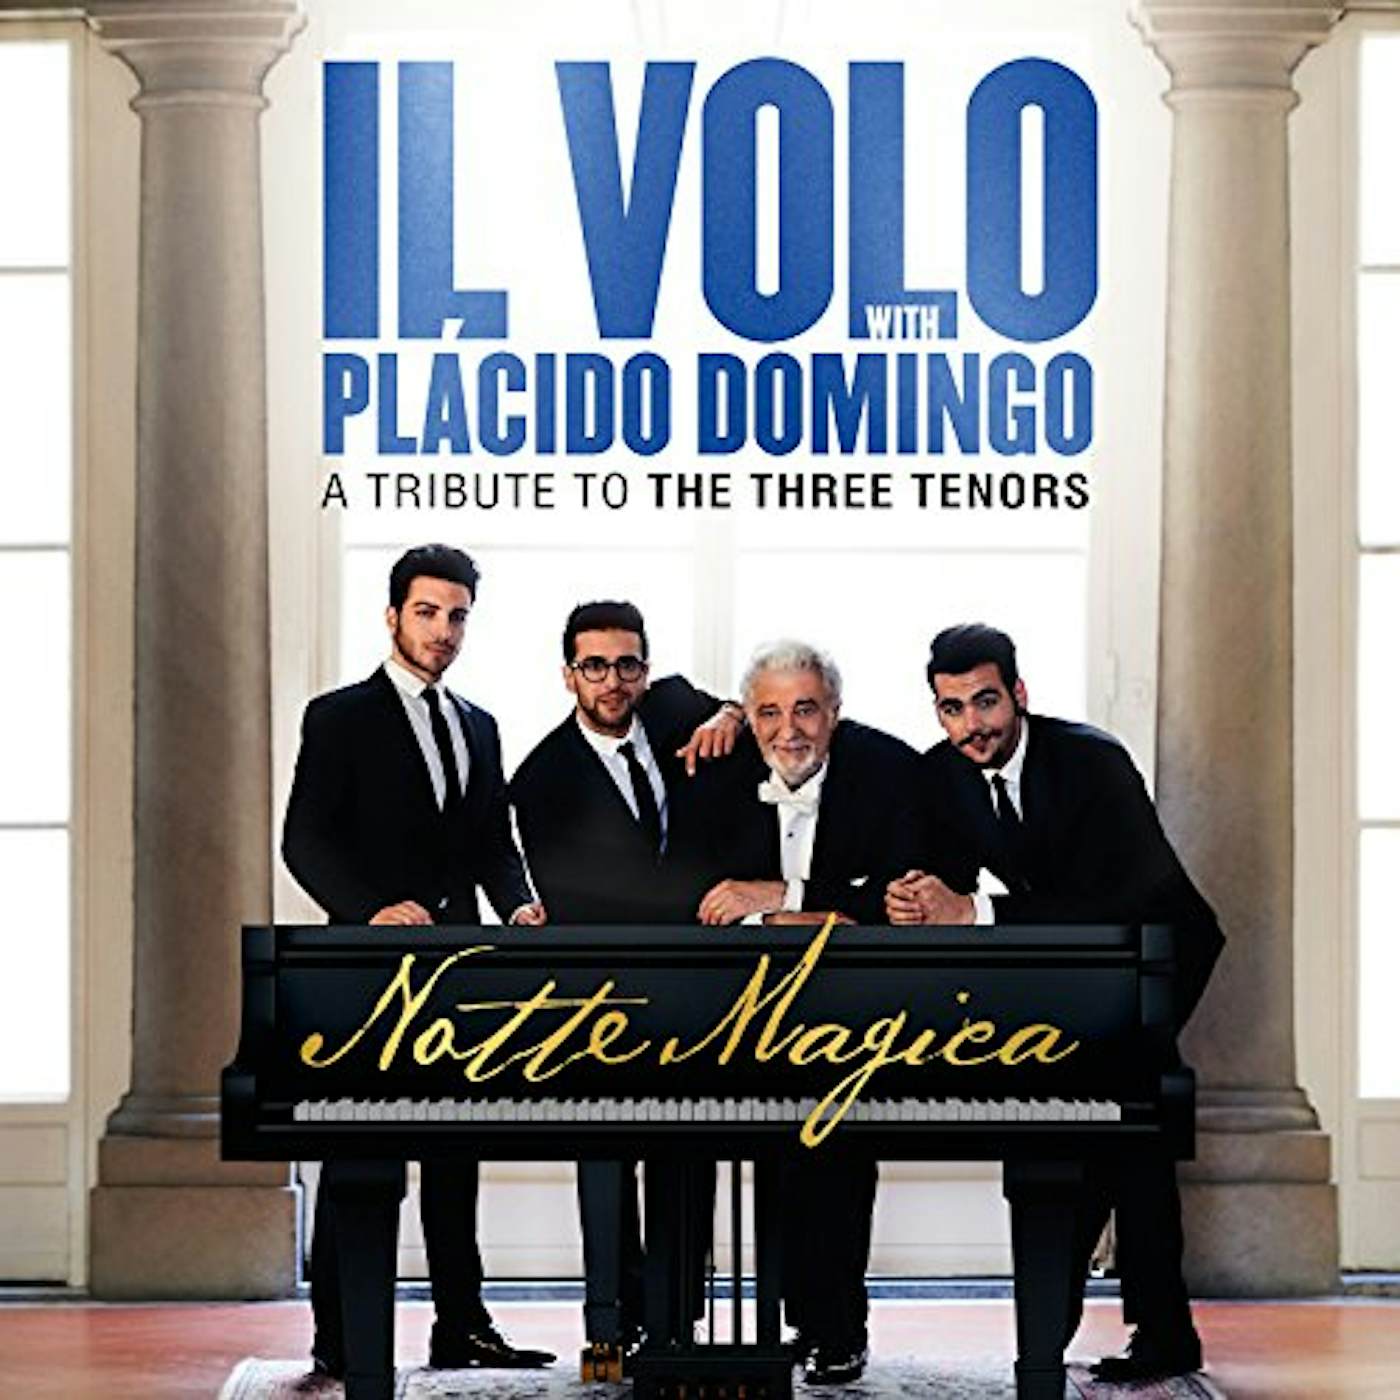 Il Volo NOTTE MAGICA: TRIBUTE TO THE THREE TENORS Vinyl Record